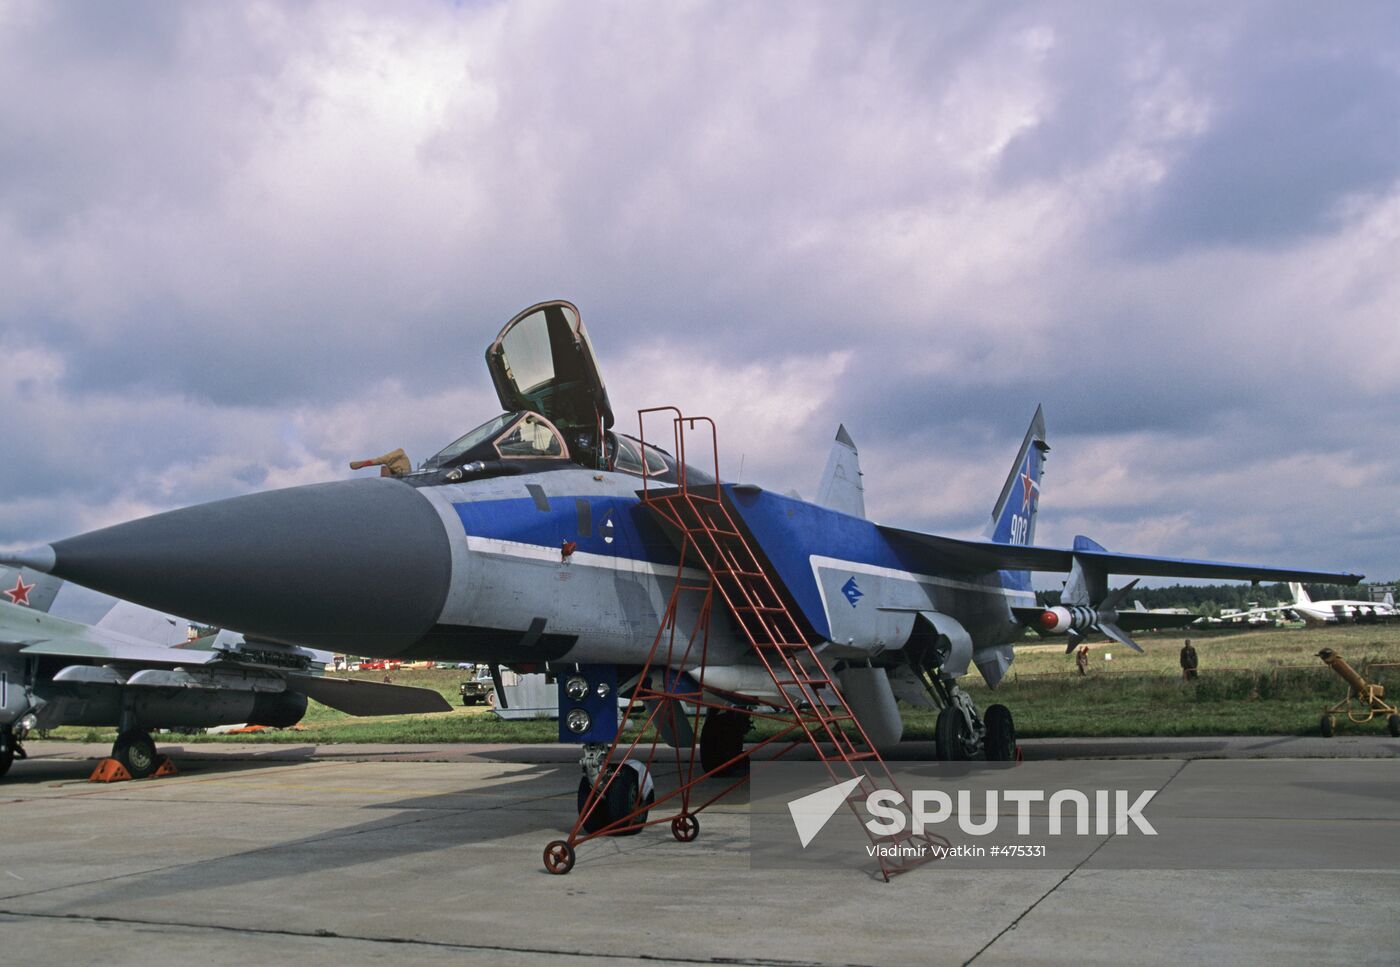 MiG-31 interceptor